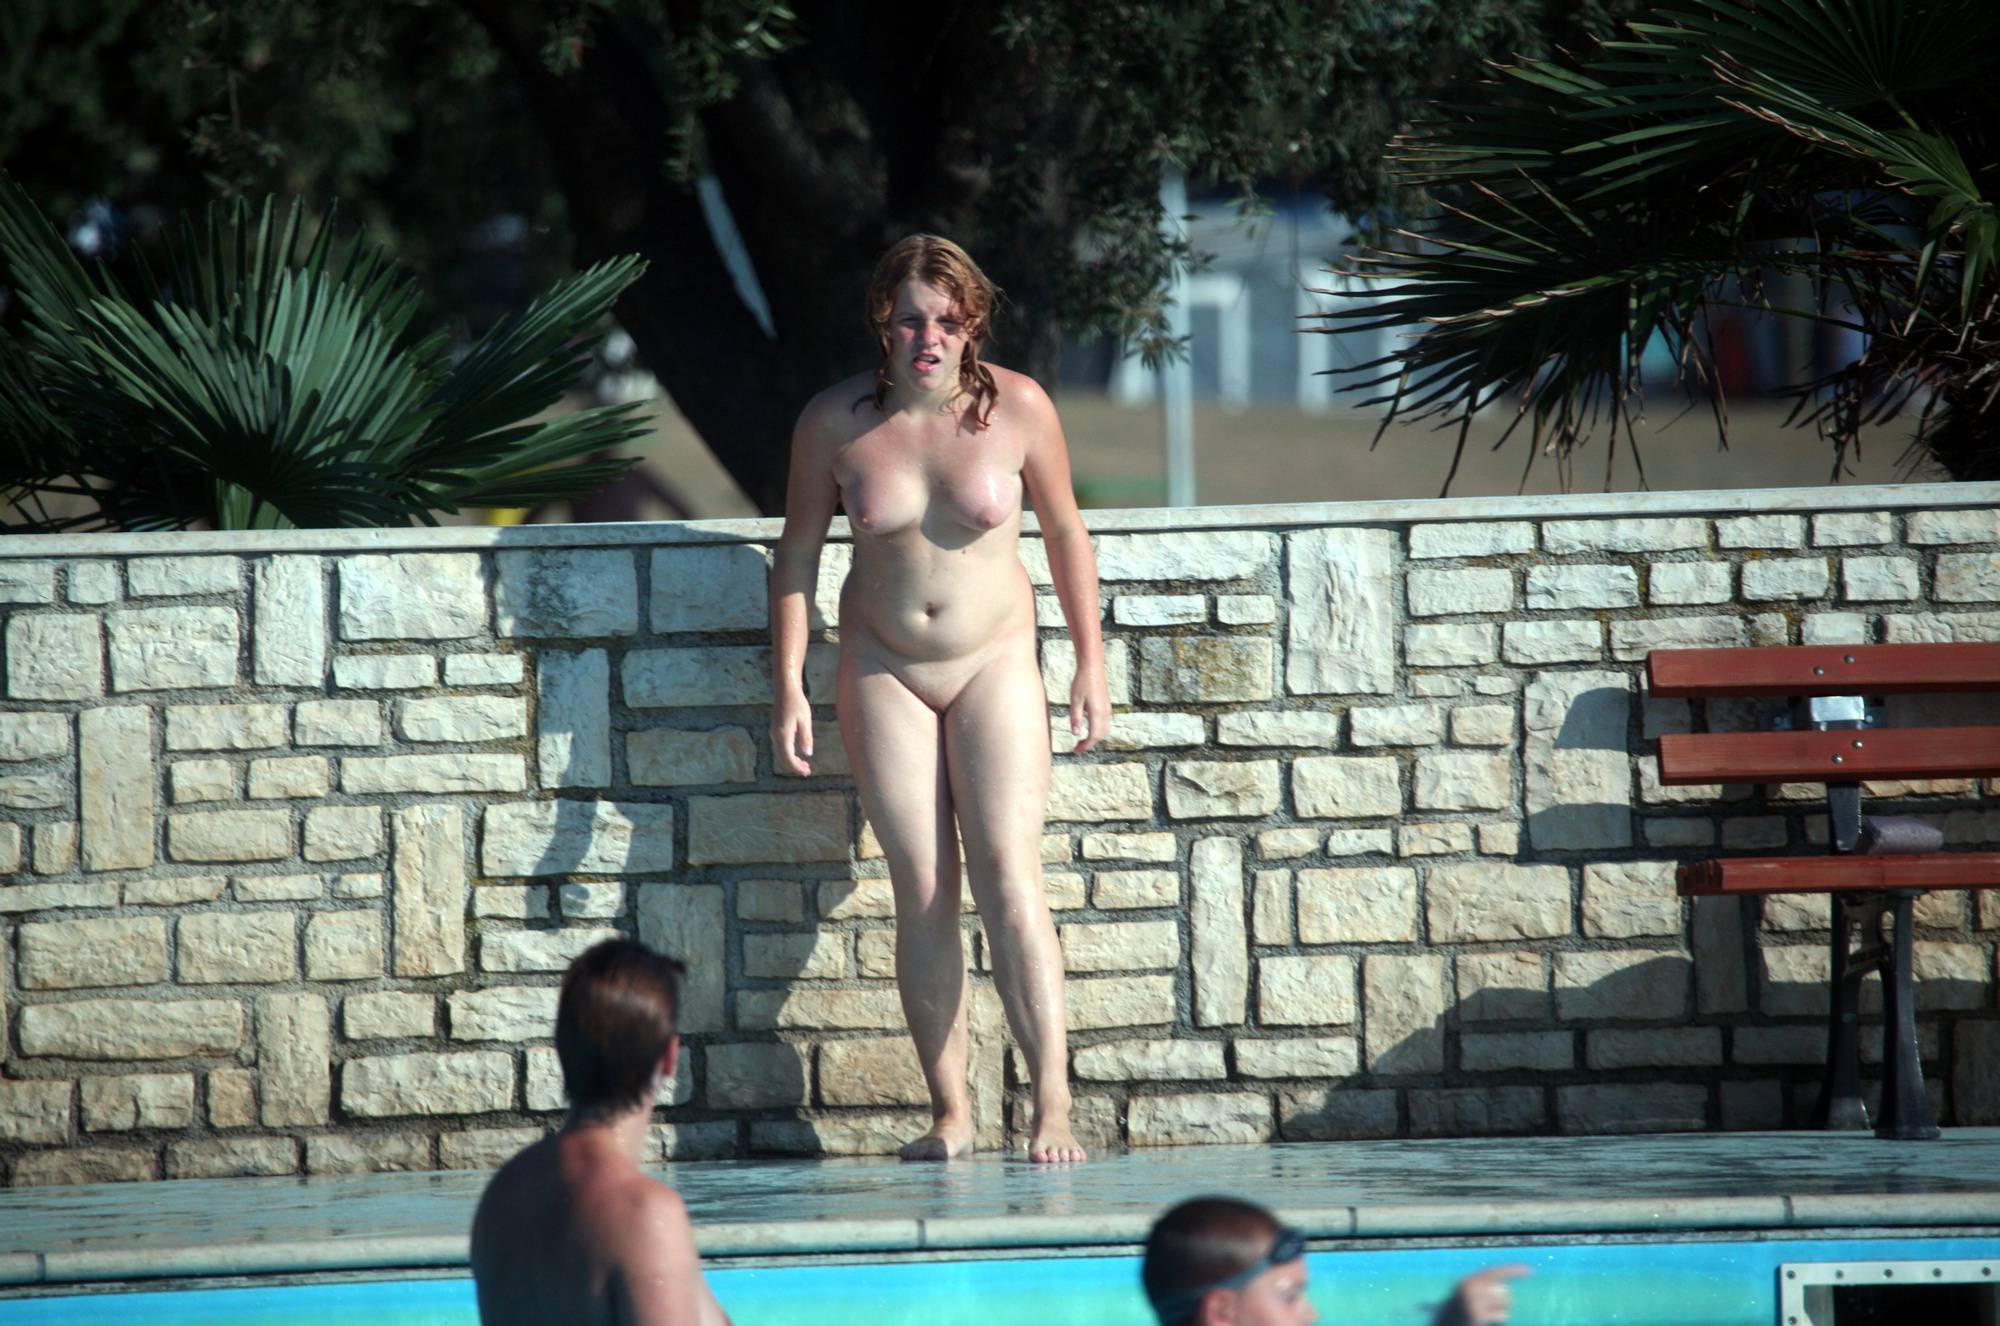 Nudist Pool Jumping Time - 2